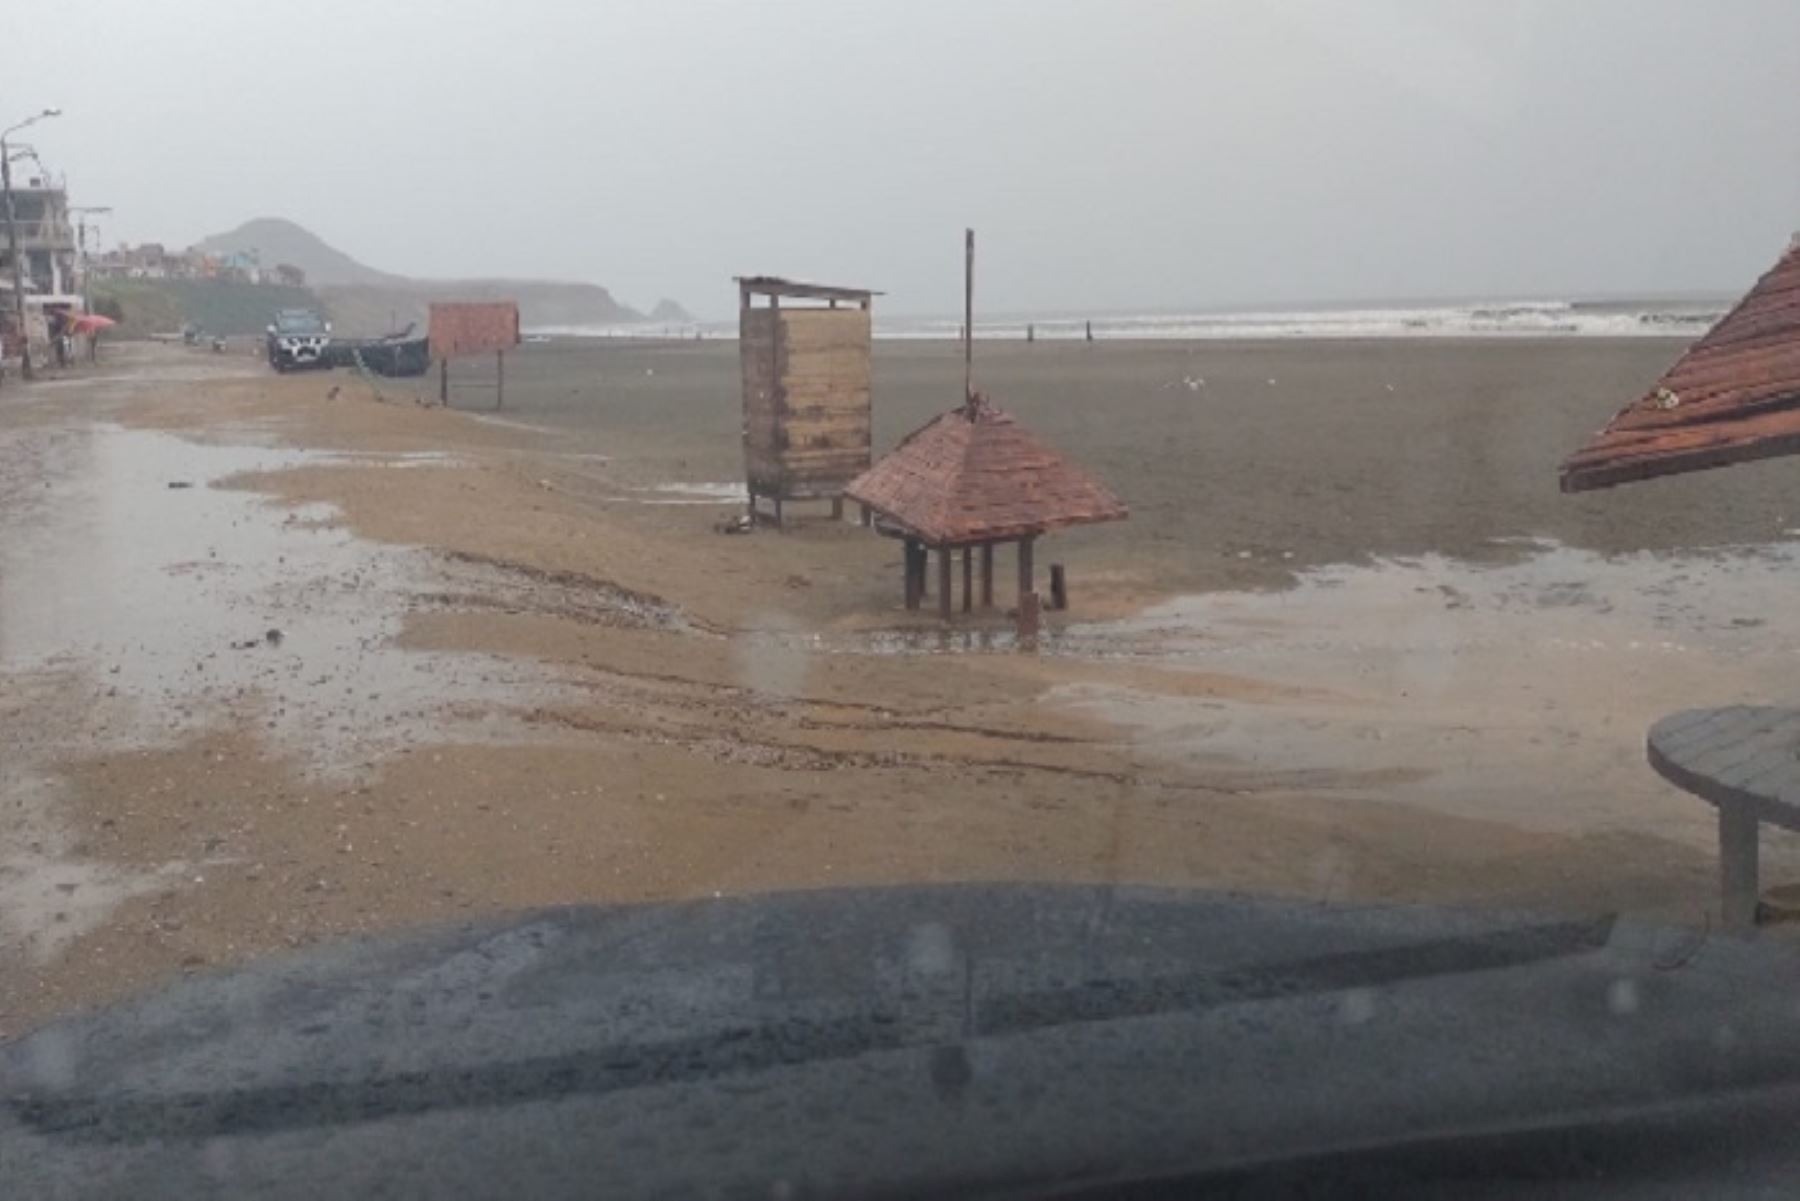 El COER La Libertad informó que las ligeras lluvias que también se han presentado en algunas zonas de la provincia de Trujillo no han significado un riesgo de activación de quebradas.